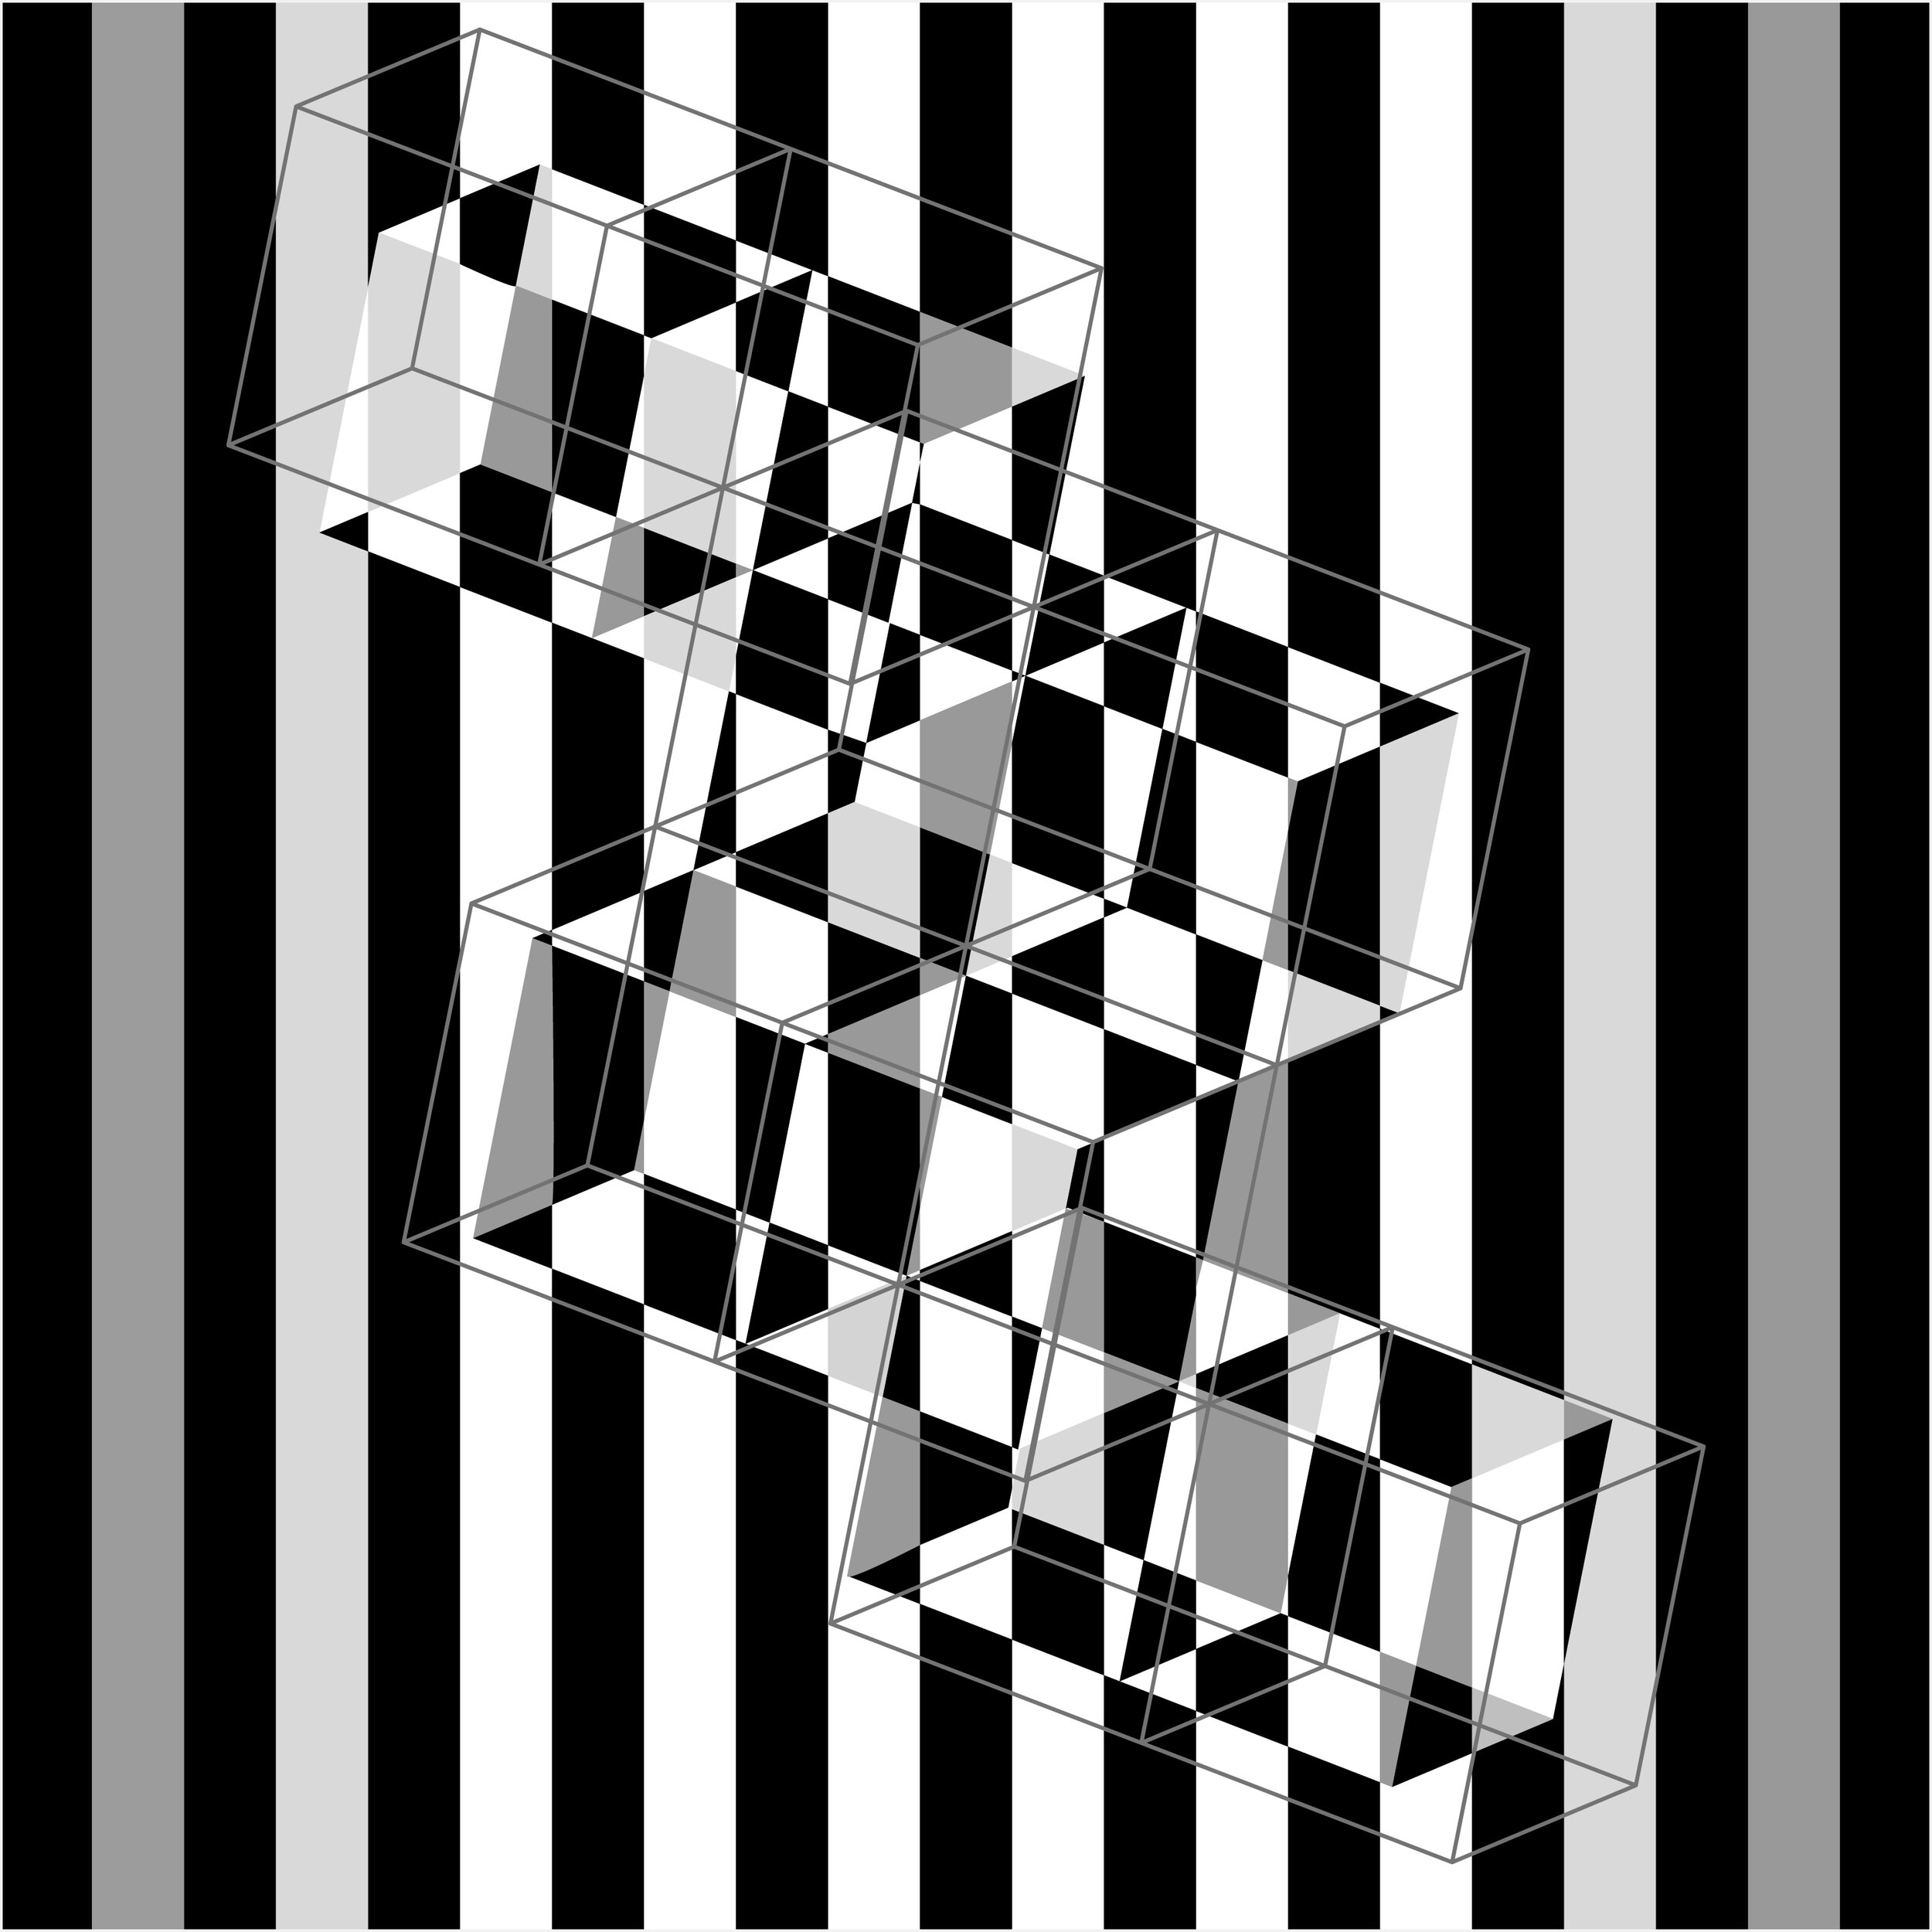 20200528_op-art-hexahedron-space_double-cube-4x_bwgr-stripes_test_biger-stroke-lines.jpg